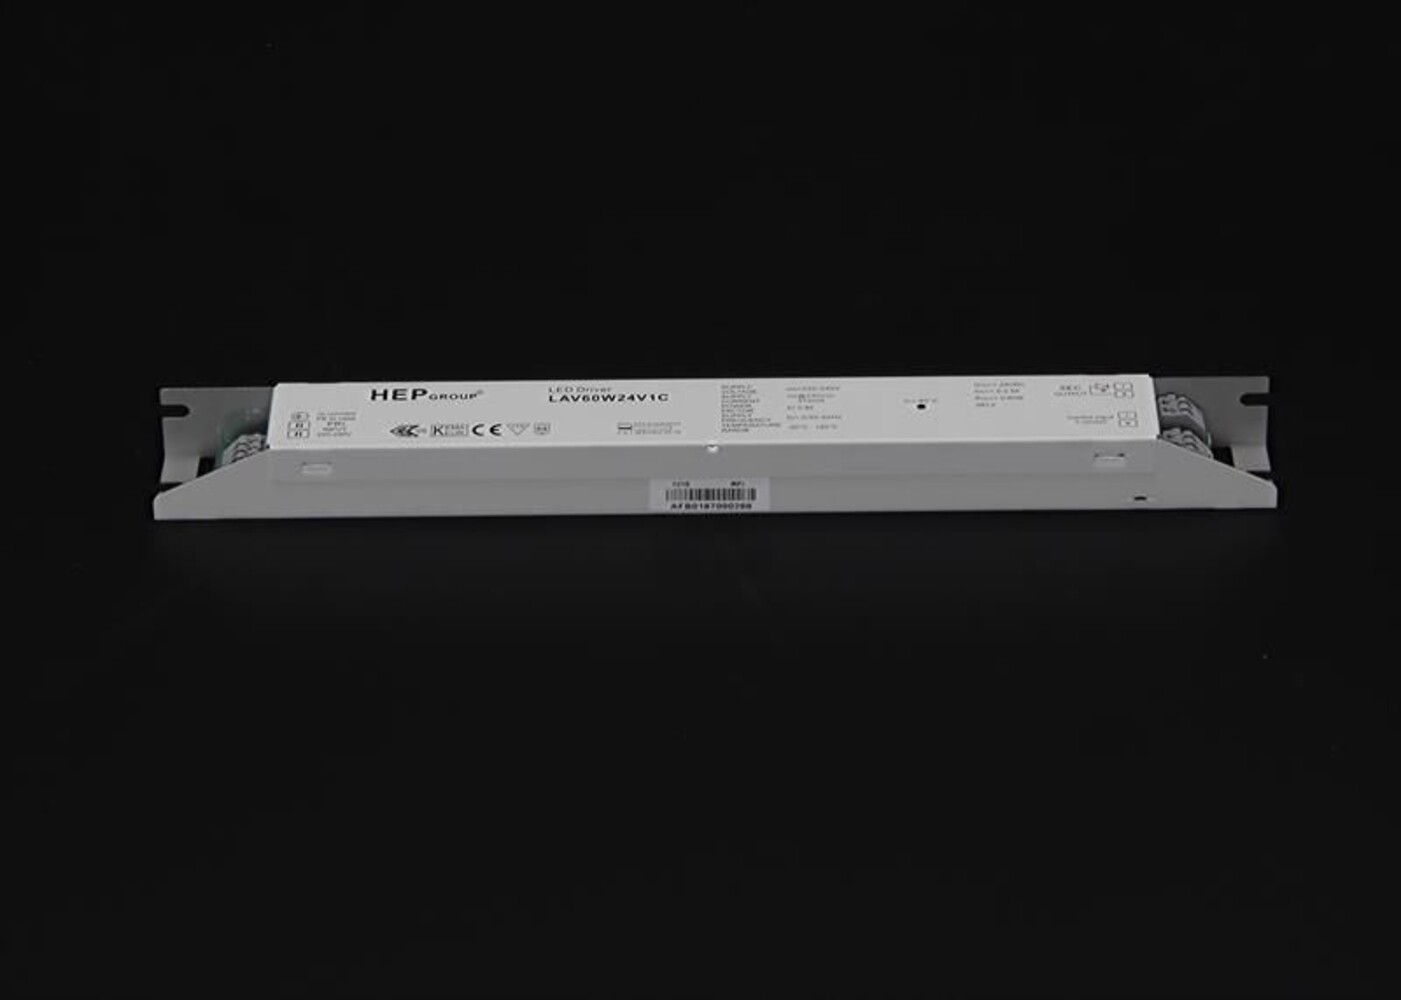 Qualitativ hochwertiges LED Netzteil der Marke HEP, mit 24V und Dimmfunktion